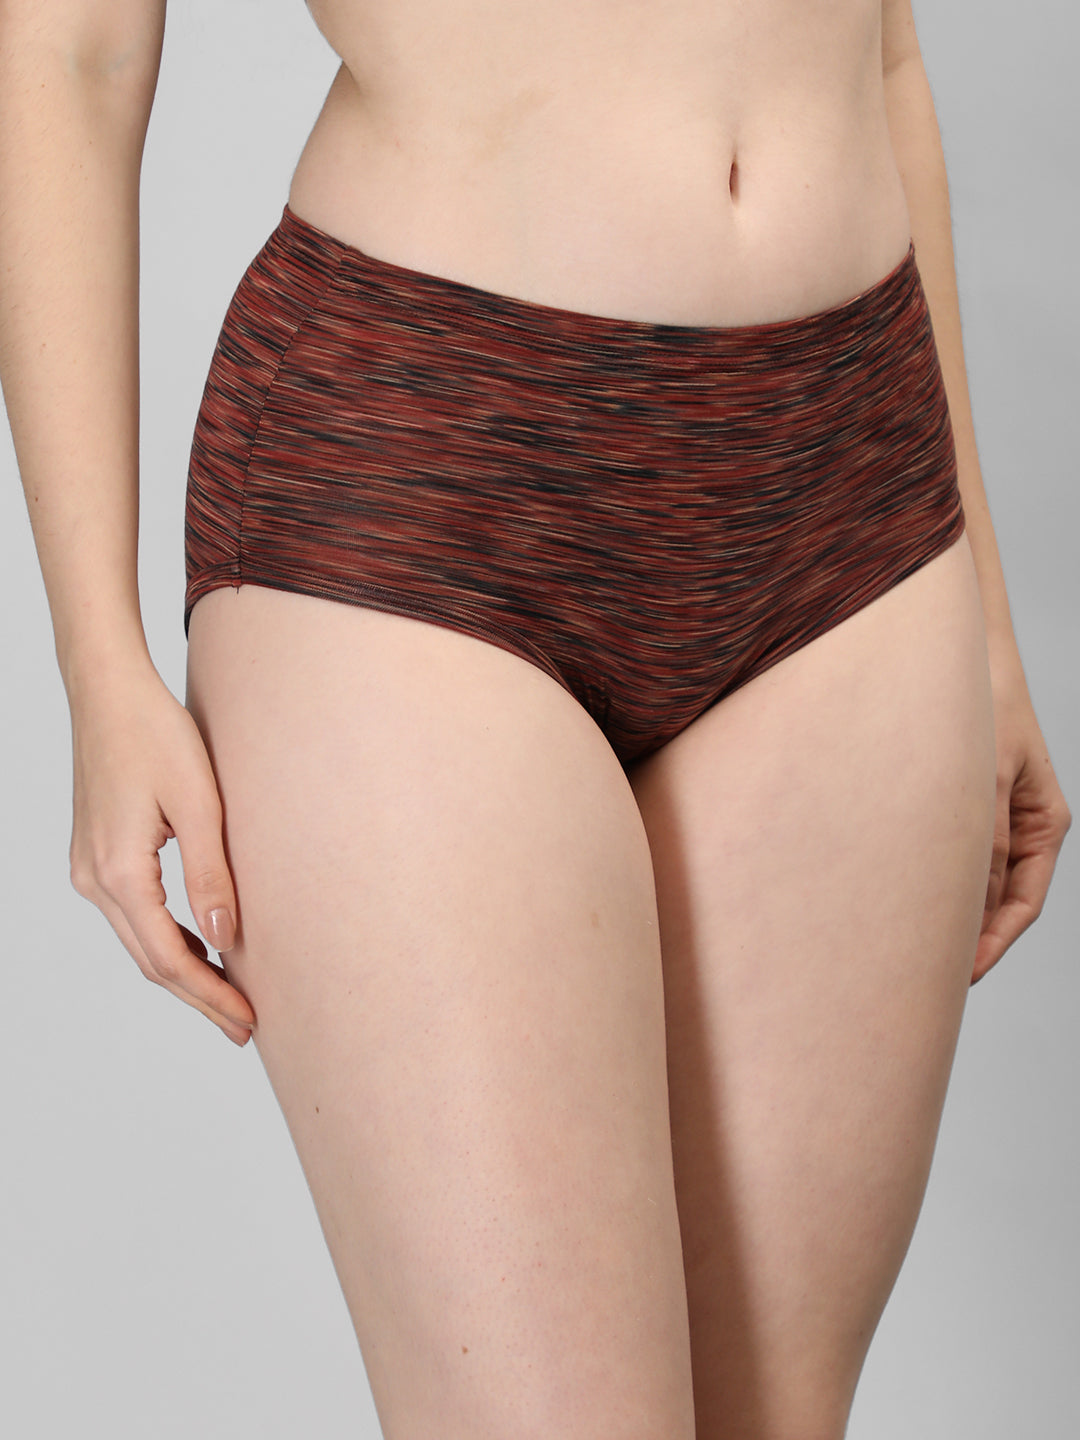 Neva Modal Women Panty Textured print Pack of 4